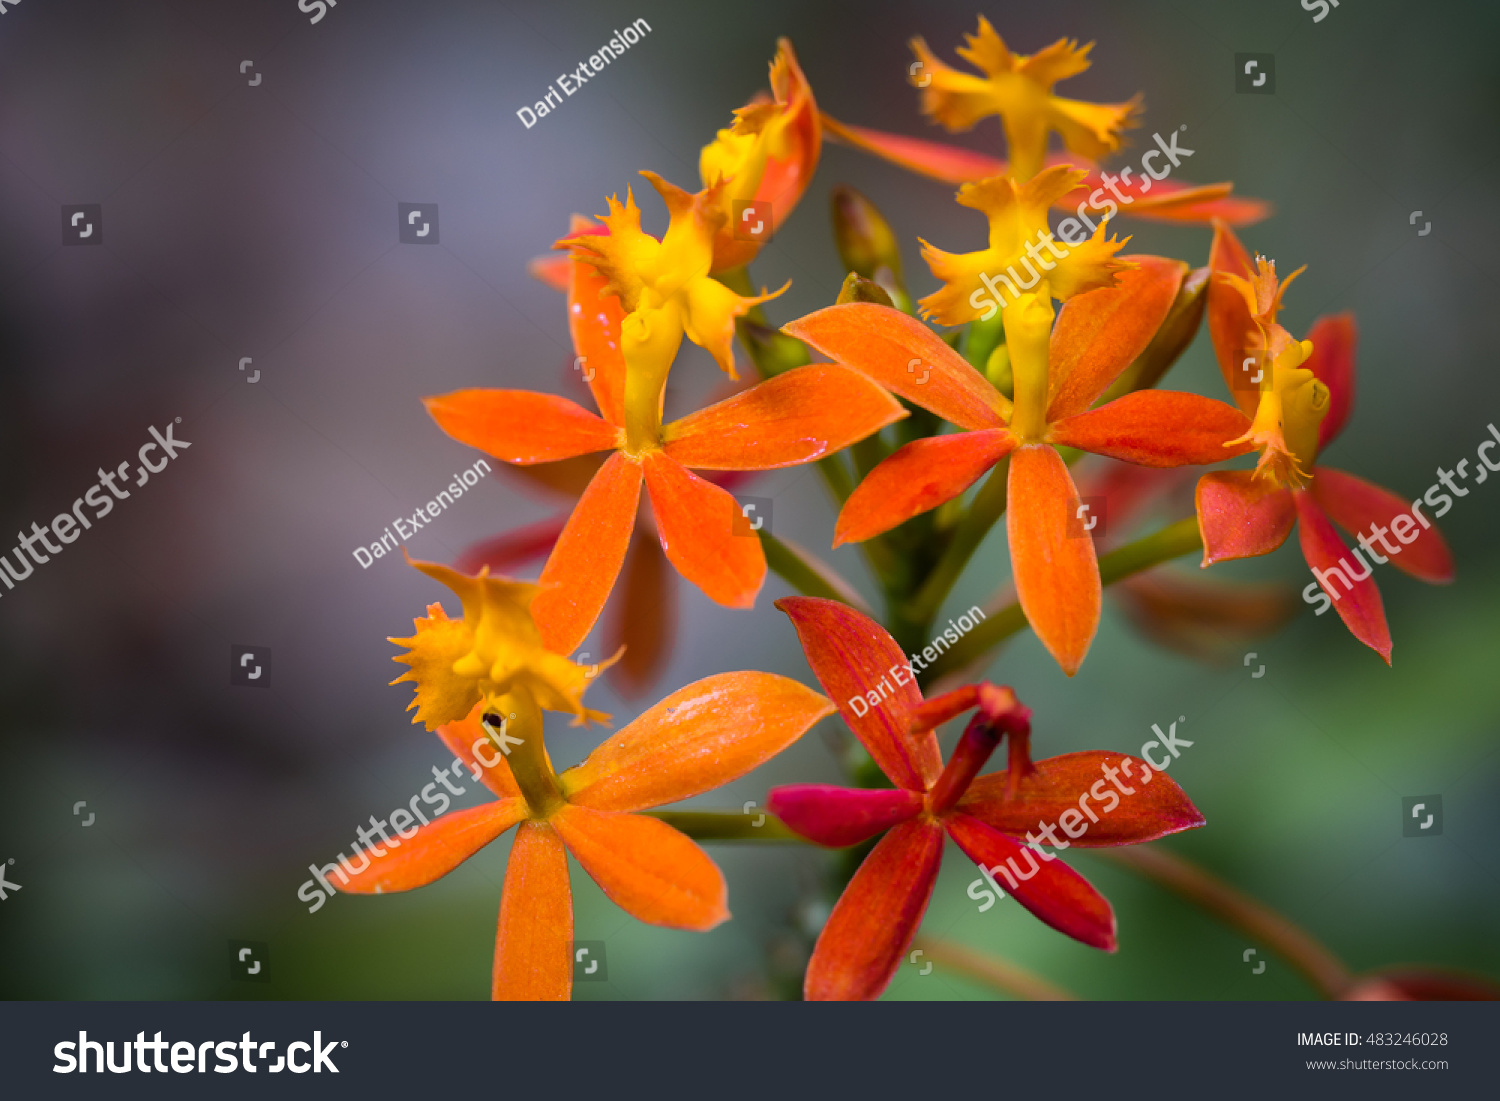 Ryg, ryg, ryg del en anden begrænse Orange Epidendrum Orchids Stock Photo (Edit Now) 483246028